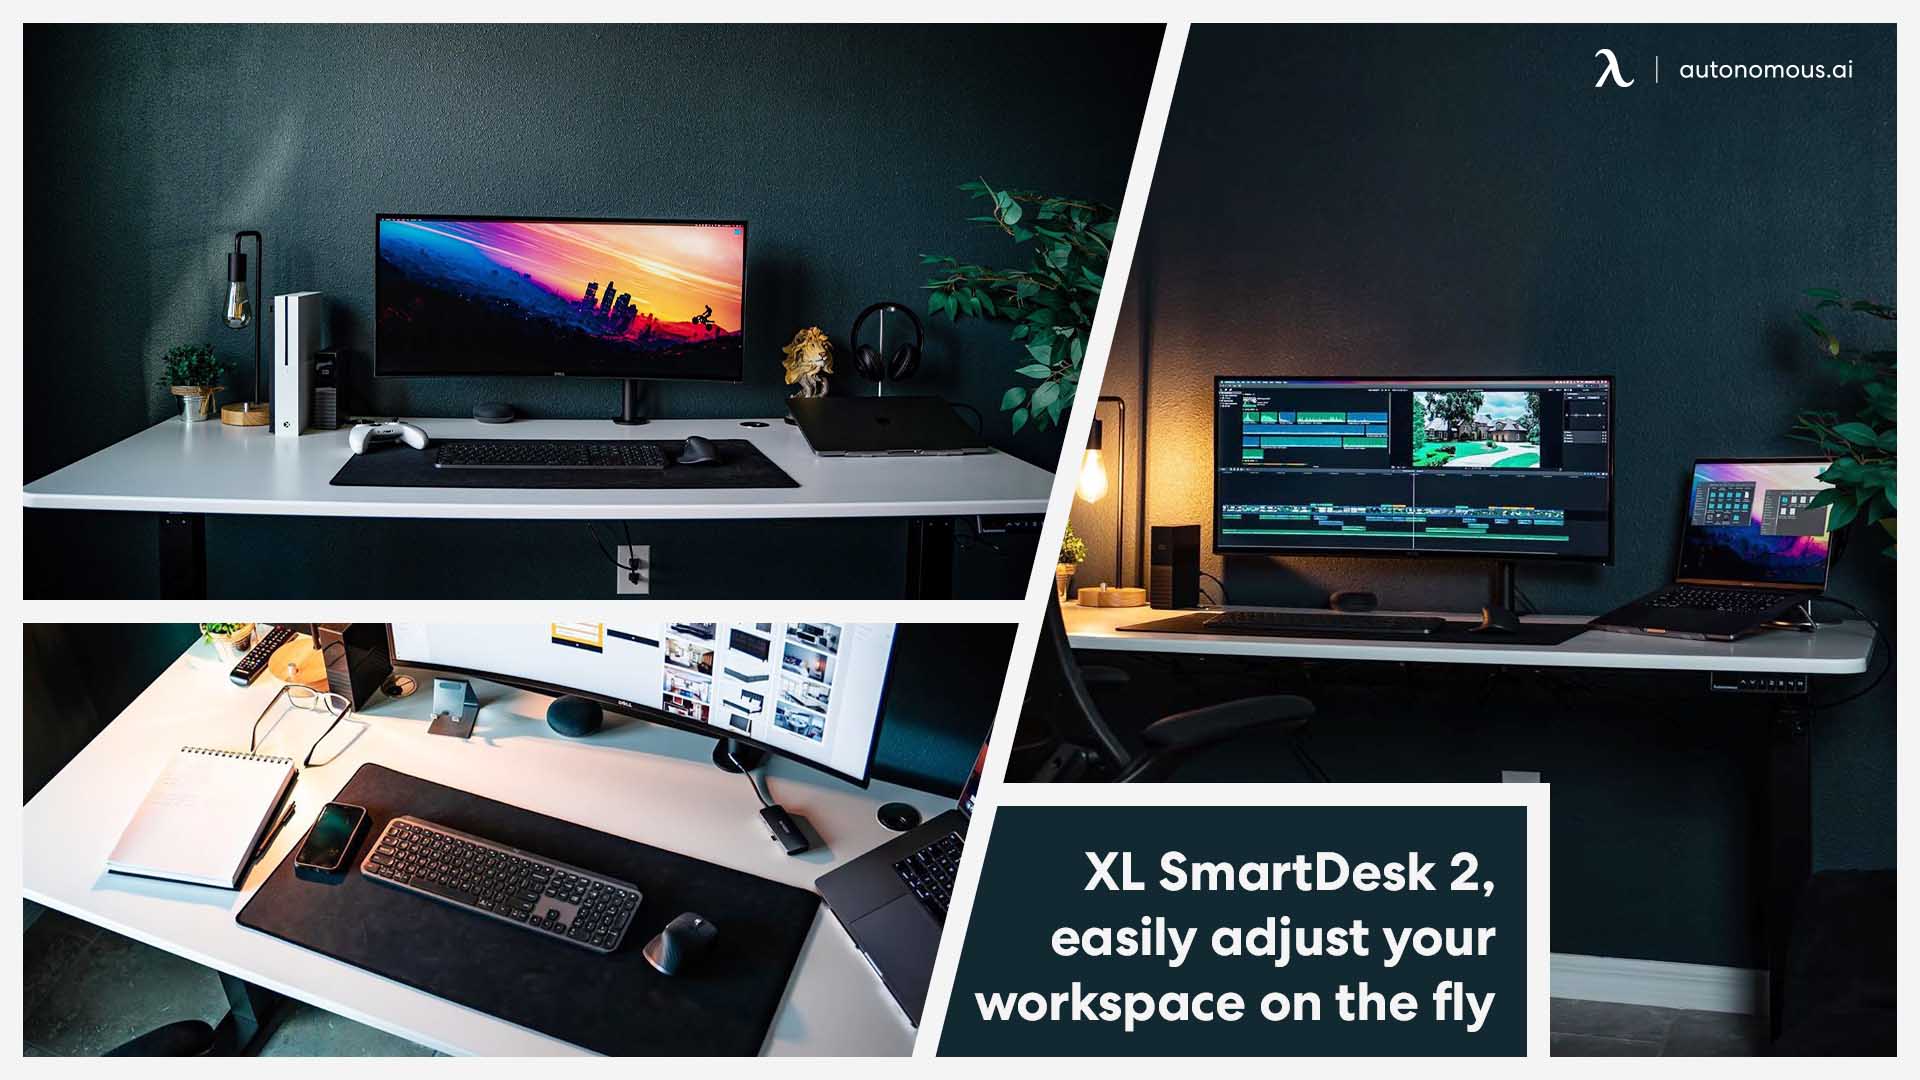 Desk setup with smart desk